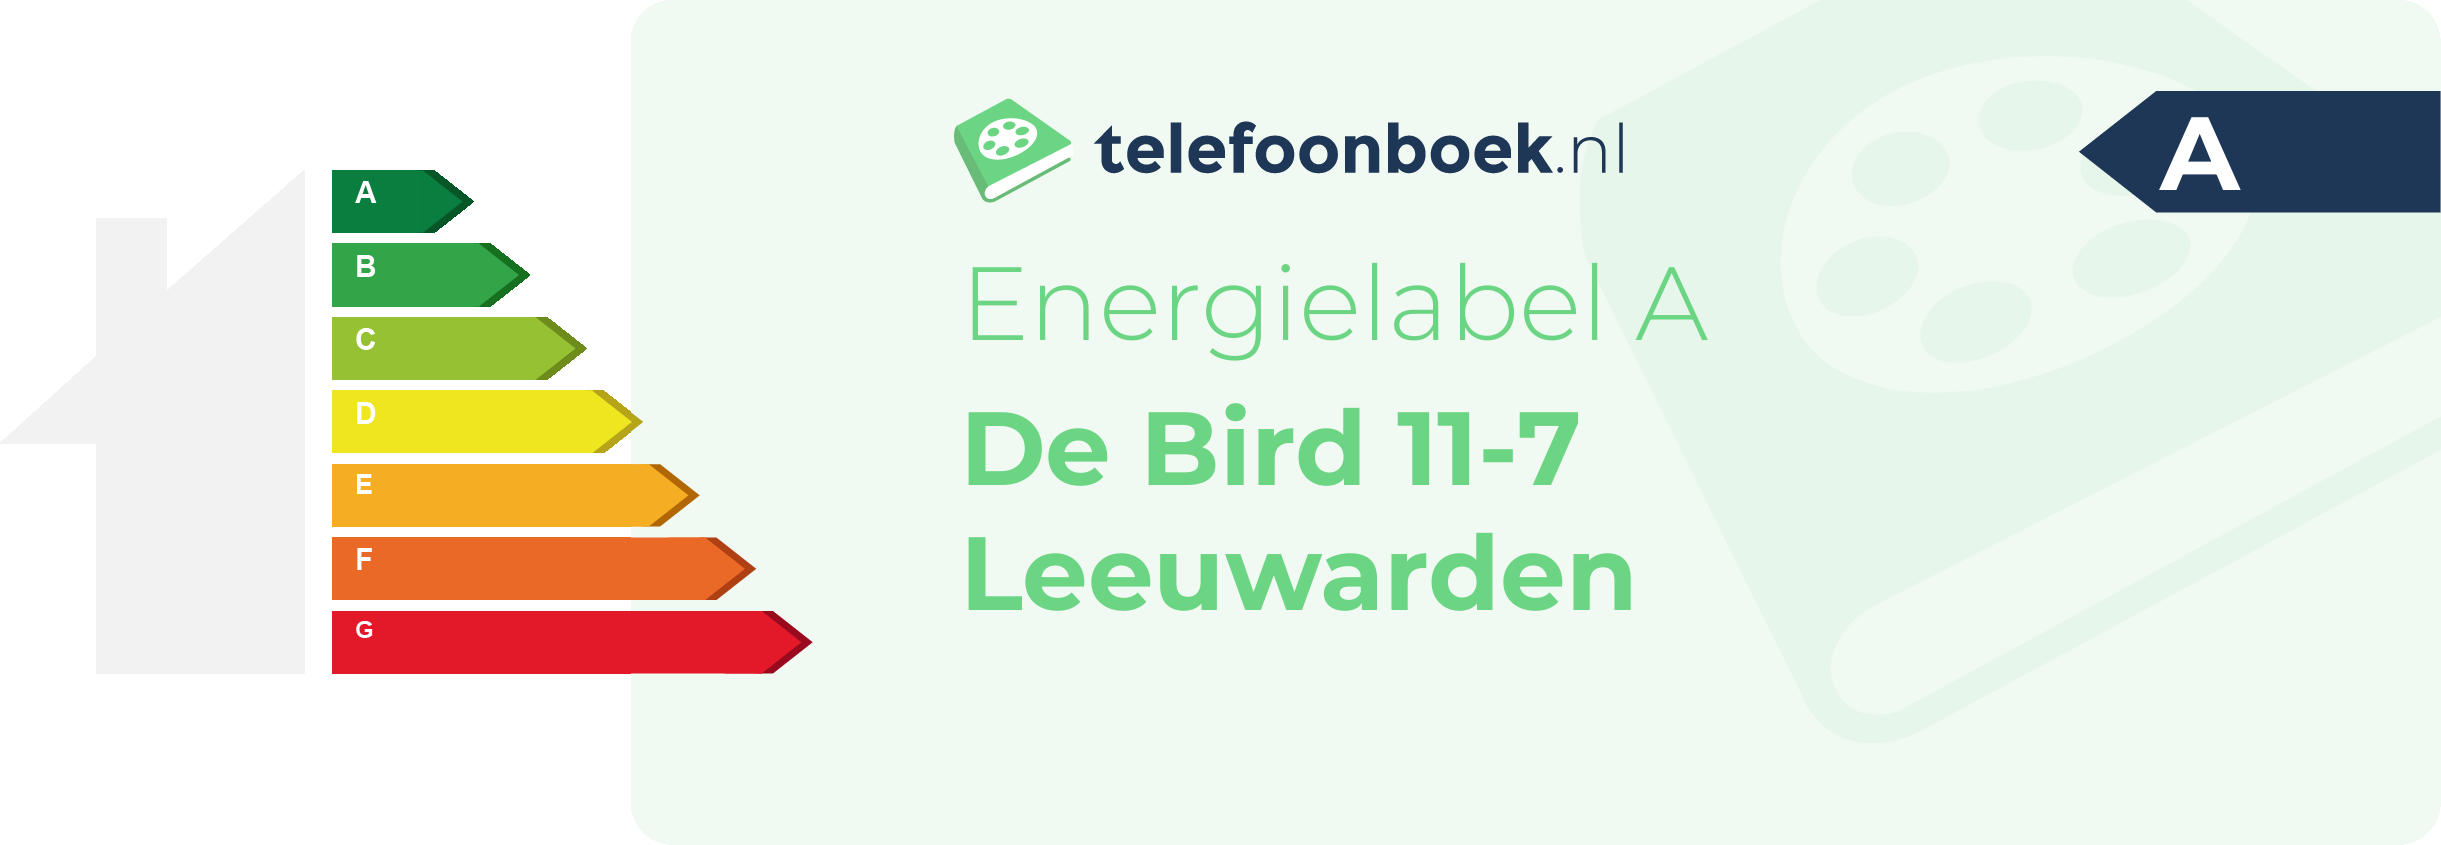 Energielabel De Bird 11-7 Leeuwarden